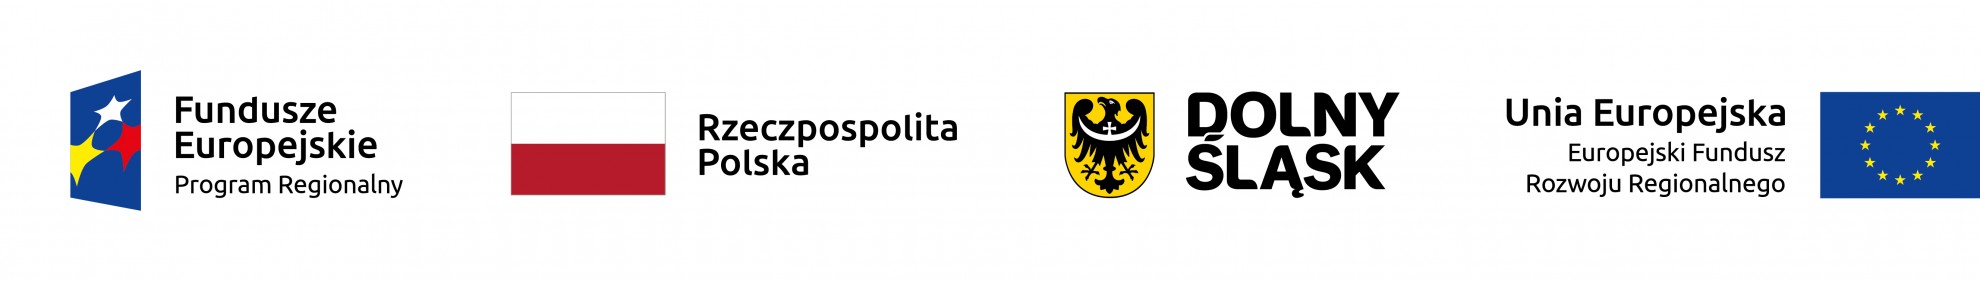 Zdjęcie przedstawiające logo: Fundusze Europejskie Program Regionalny, flagę narodową z podpisem Rzeczpospolita Polska, podpisane godło dolnego śląska, flagę Unii Europejskiej z podpisem Unia Europejska Europejski Fundusz Rozwoju Regionalnego.